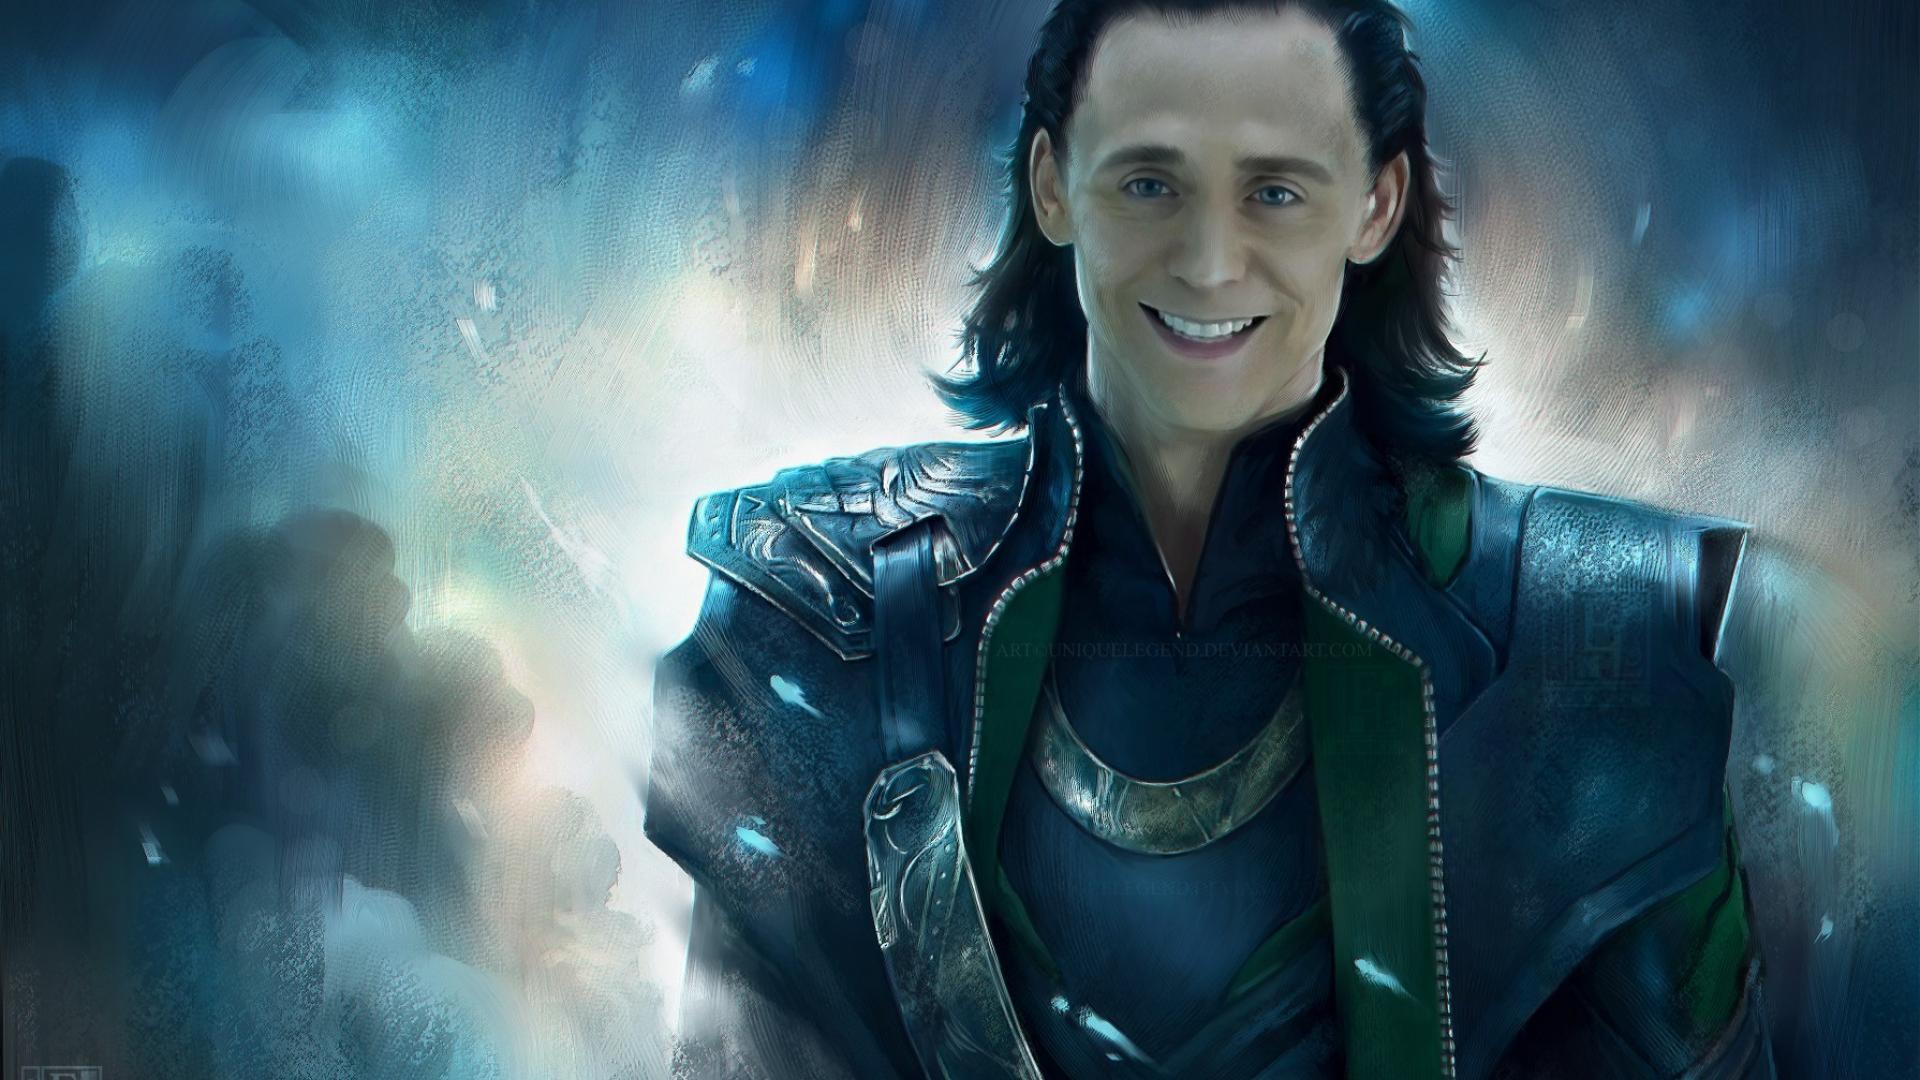 Loki marvel tom hiddleston the avengers (movie) wallpaper